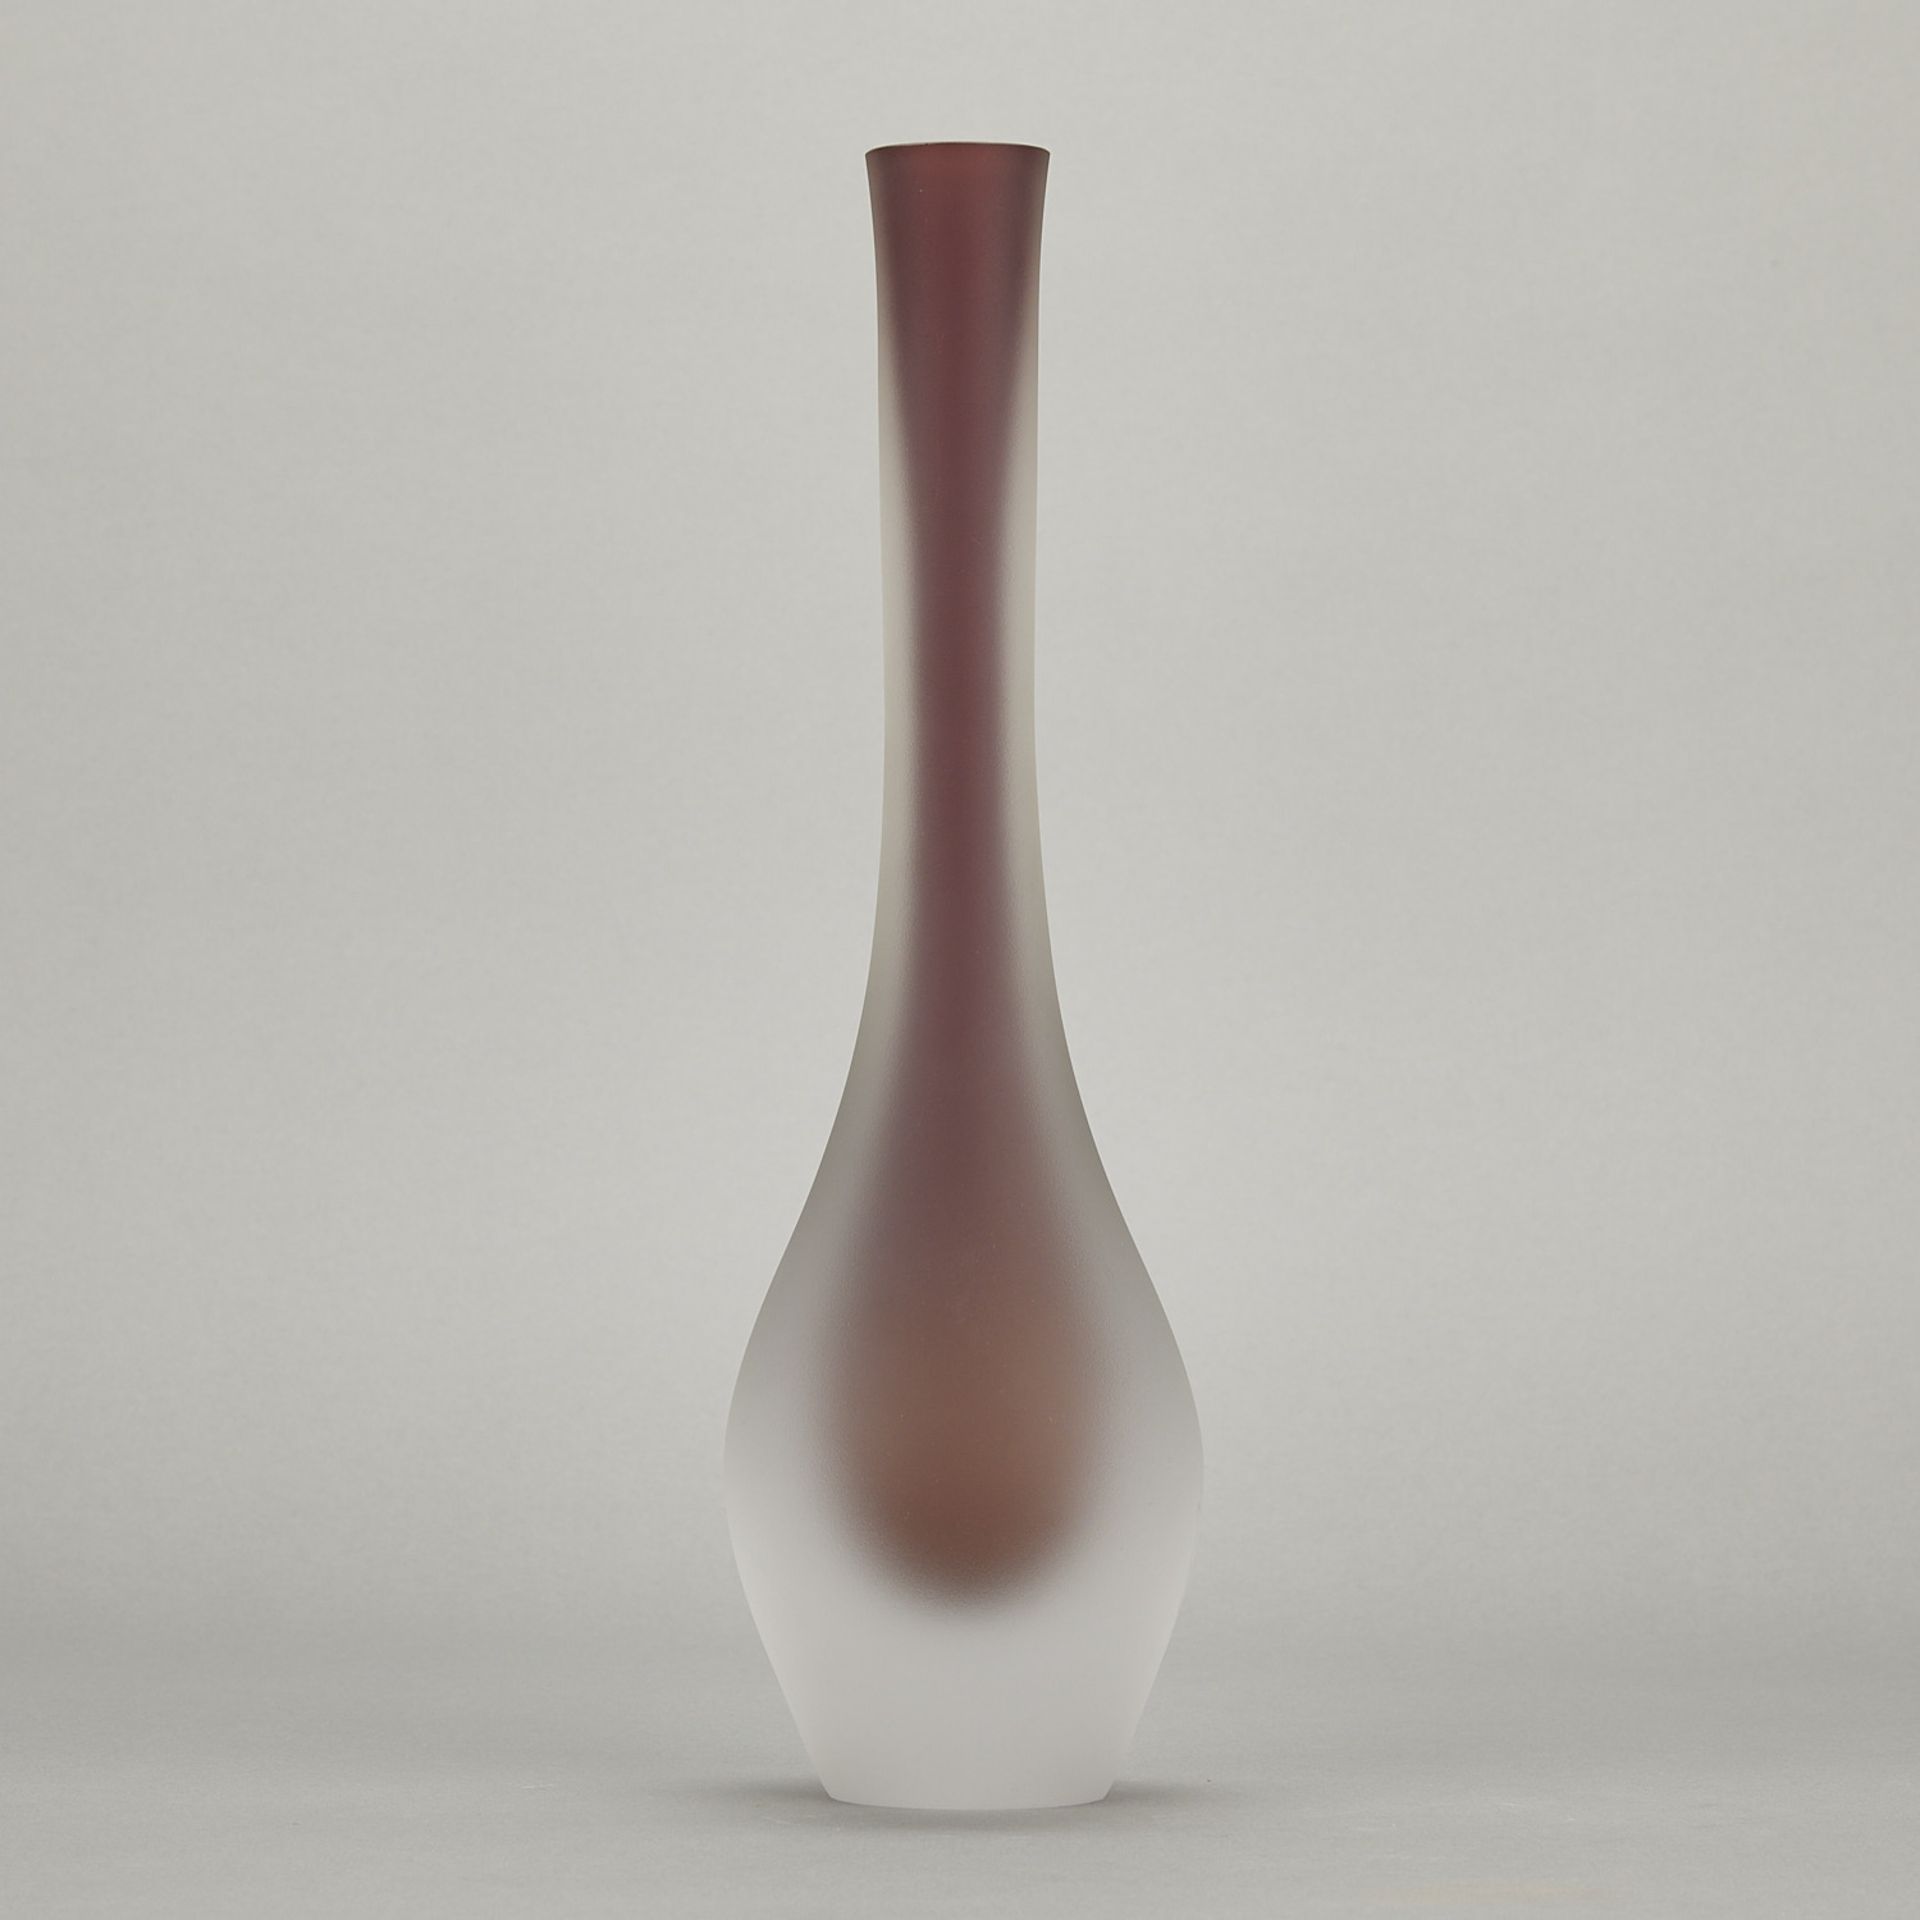 Panu Turunen & Kari Alakoski "Drop" Glass Vase - Image 3 of 8